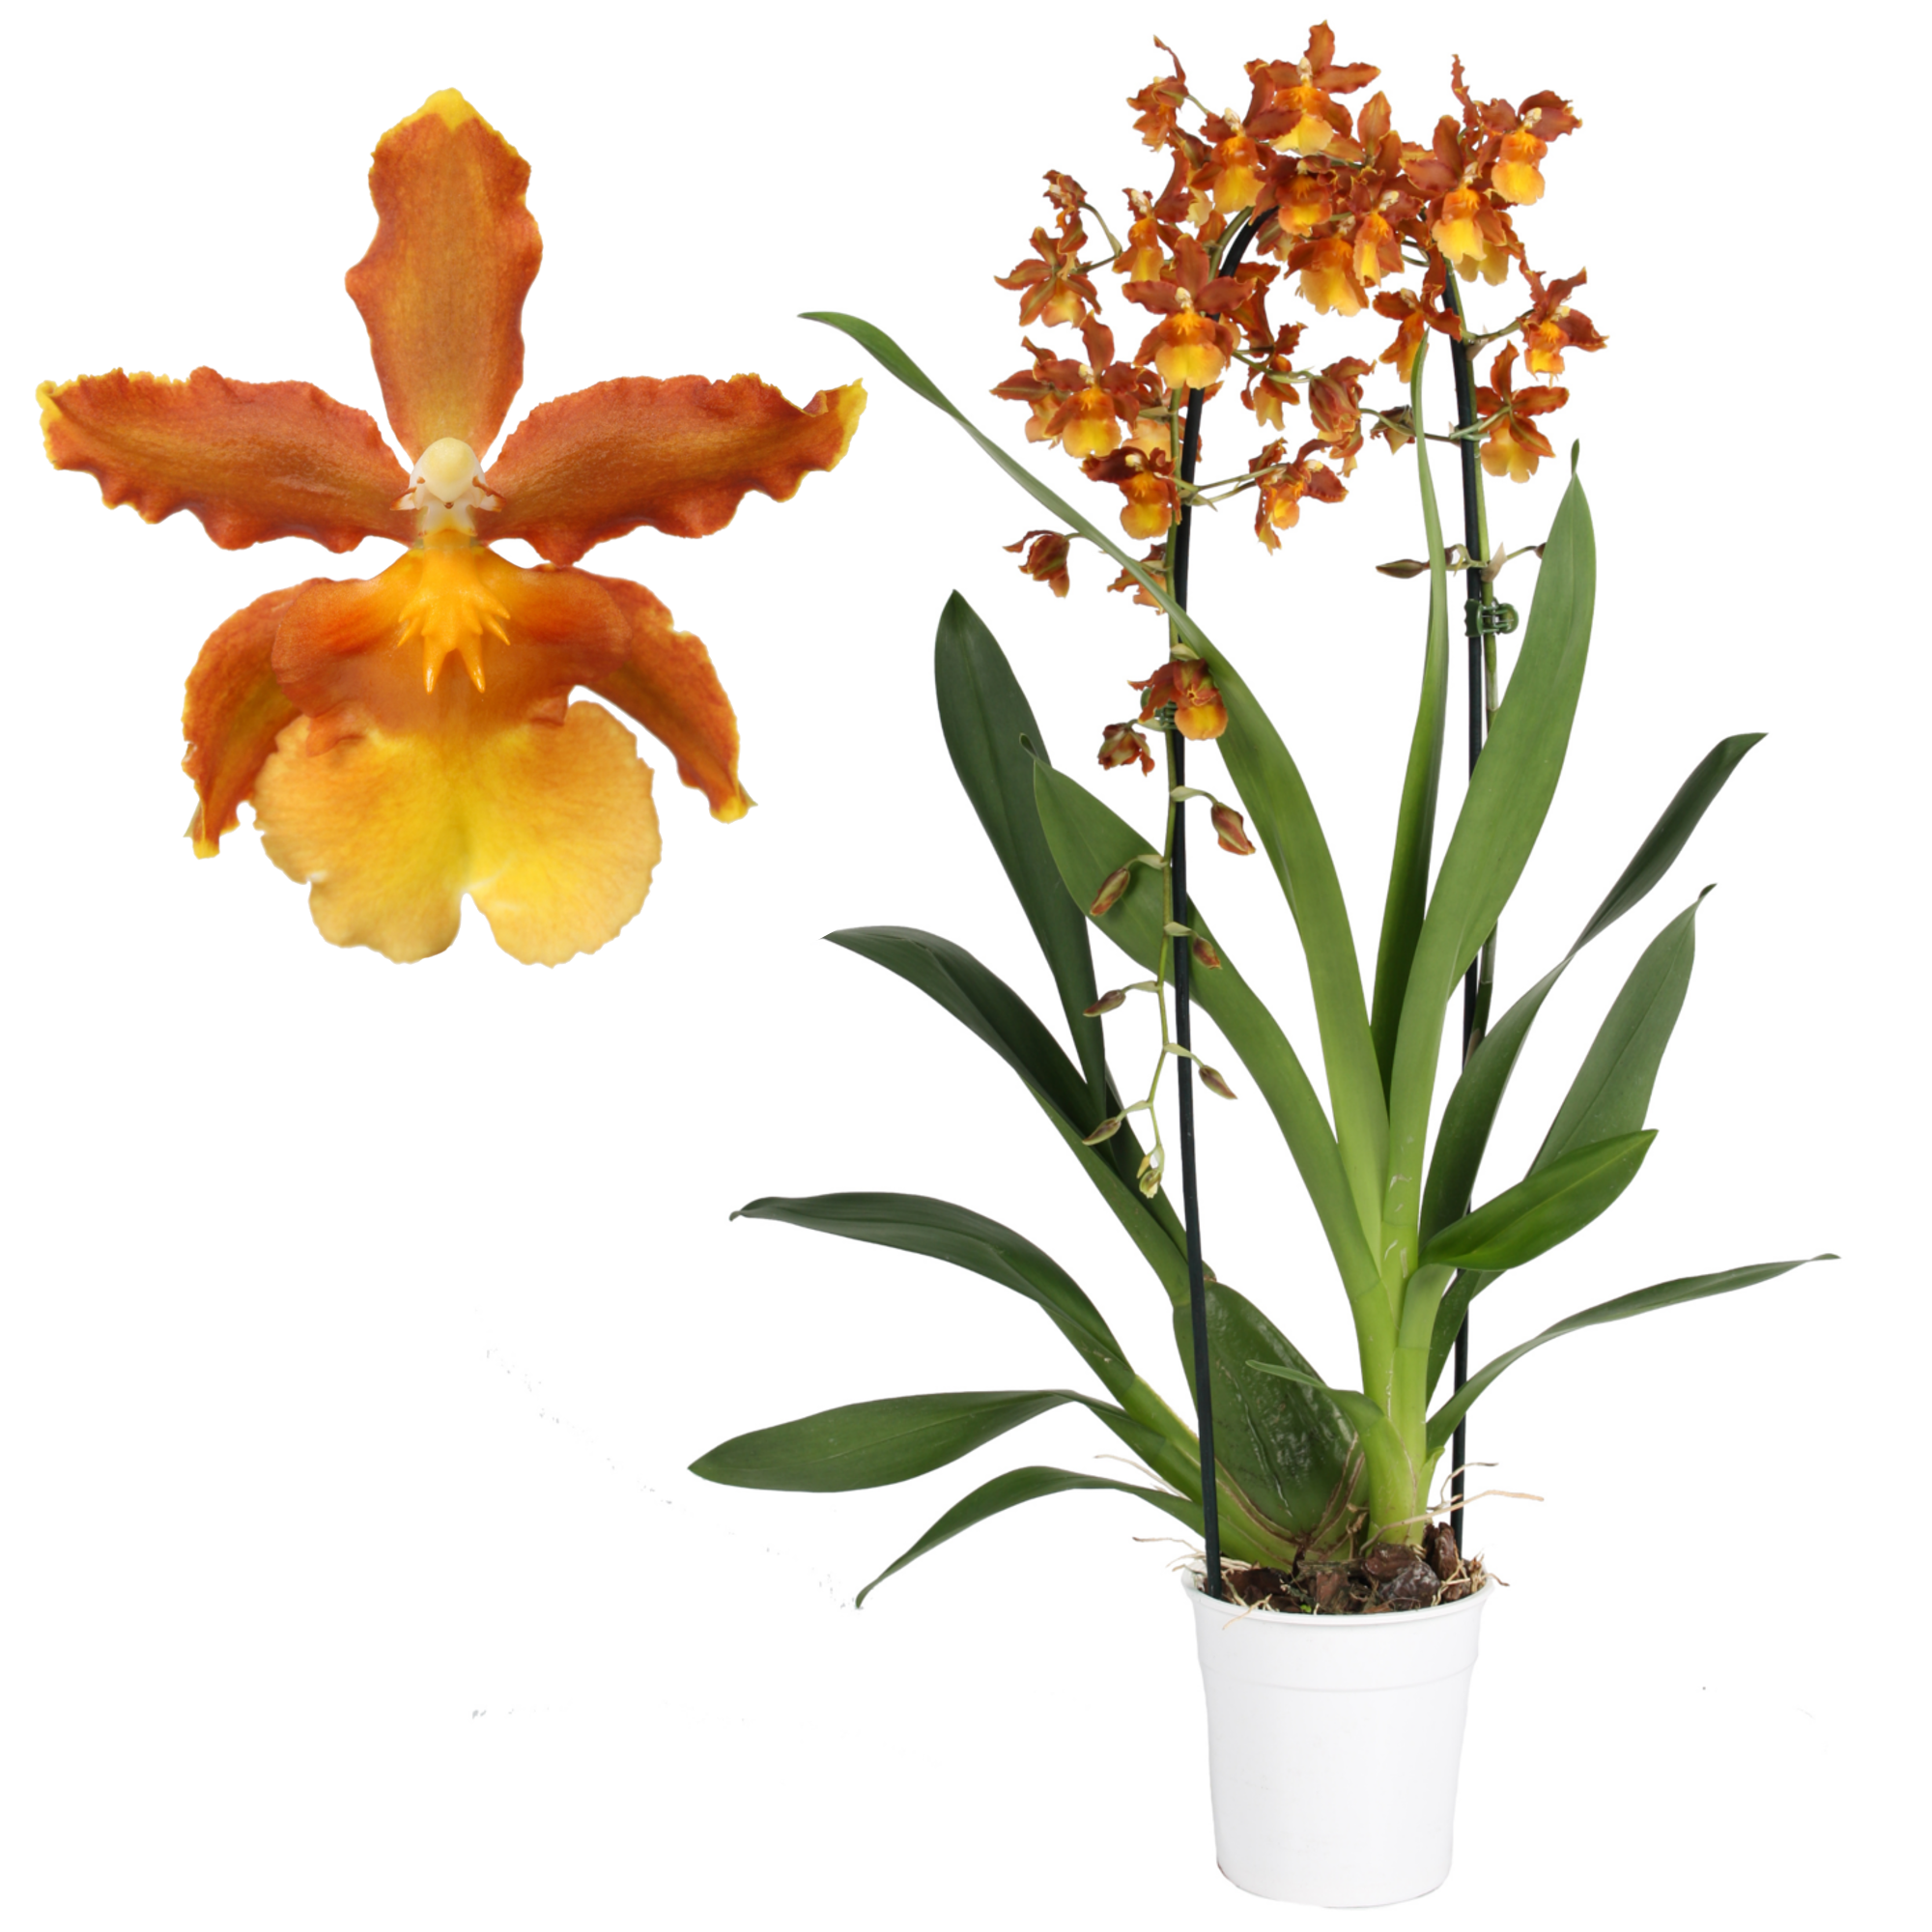 Cambria-Orchidee 'Catatante' 1 Rispe orange, 12 cm Topf + product picture